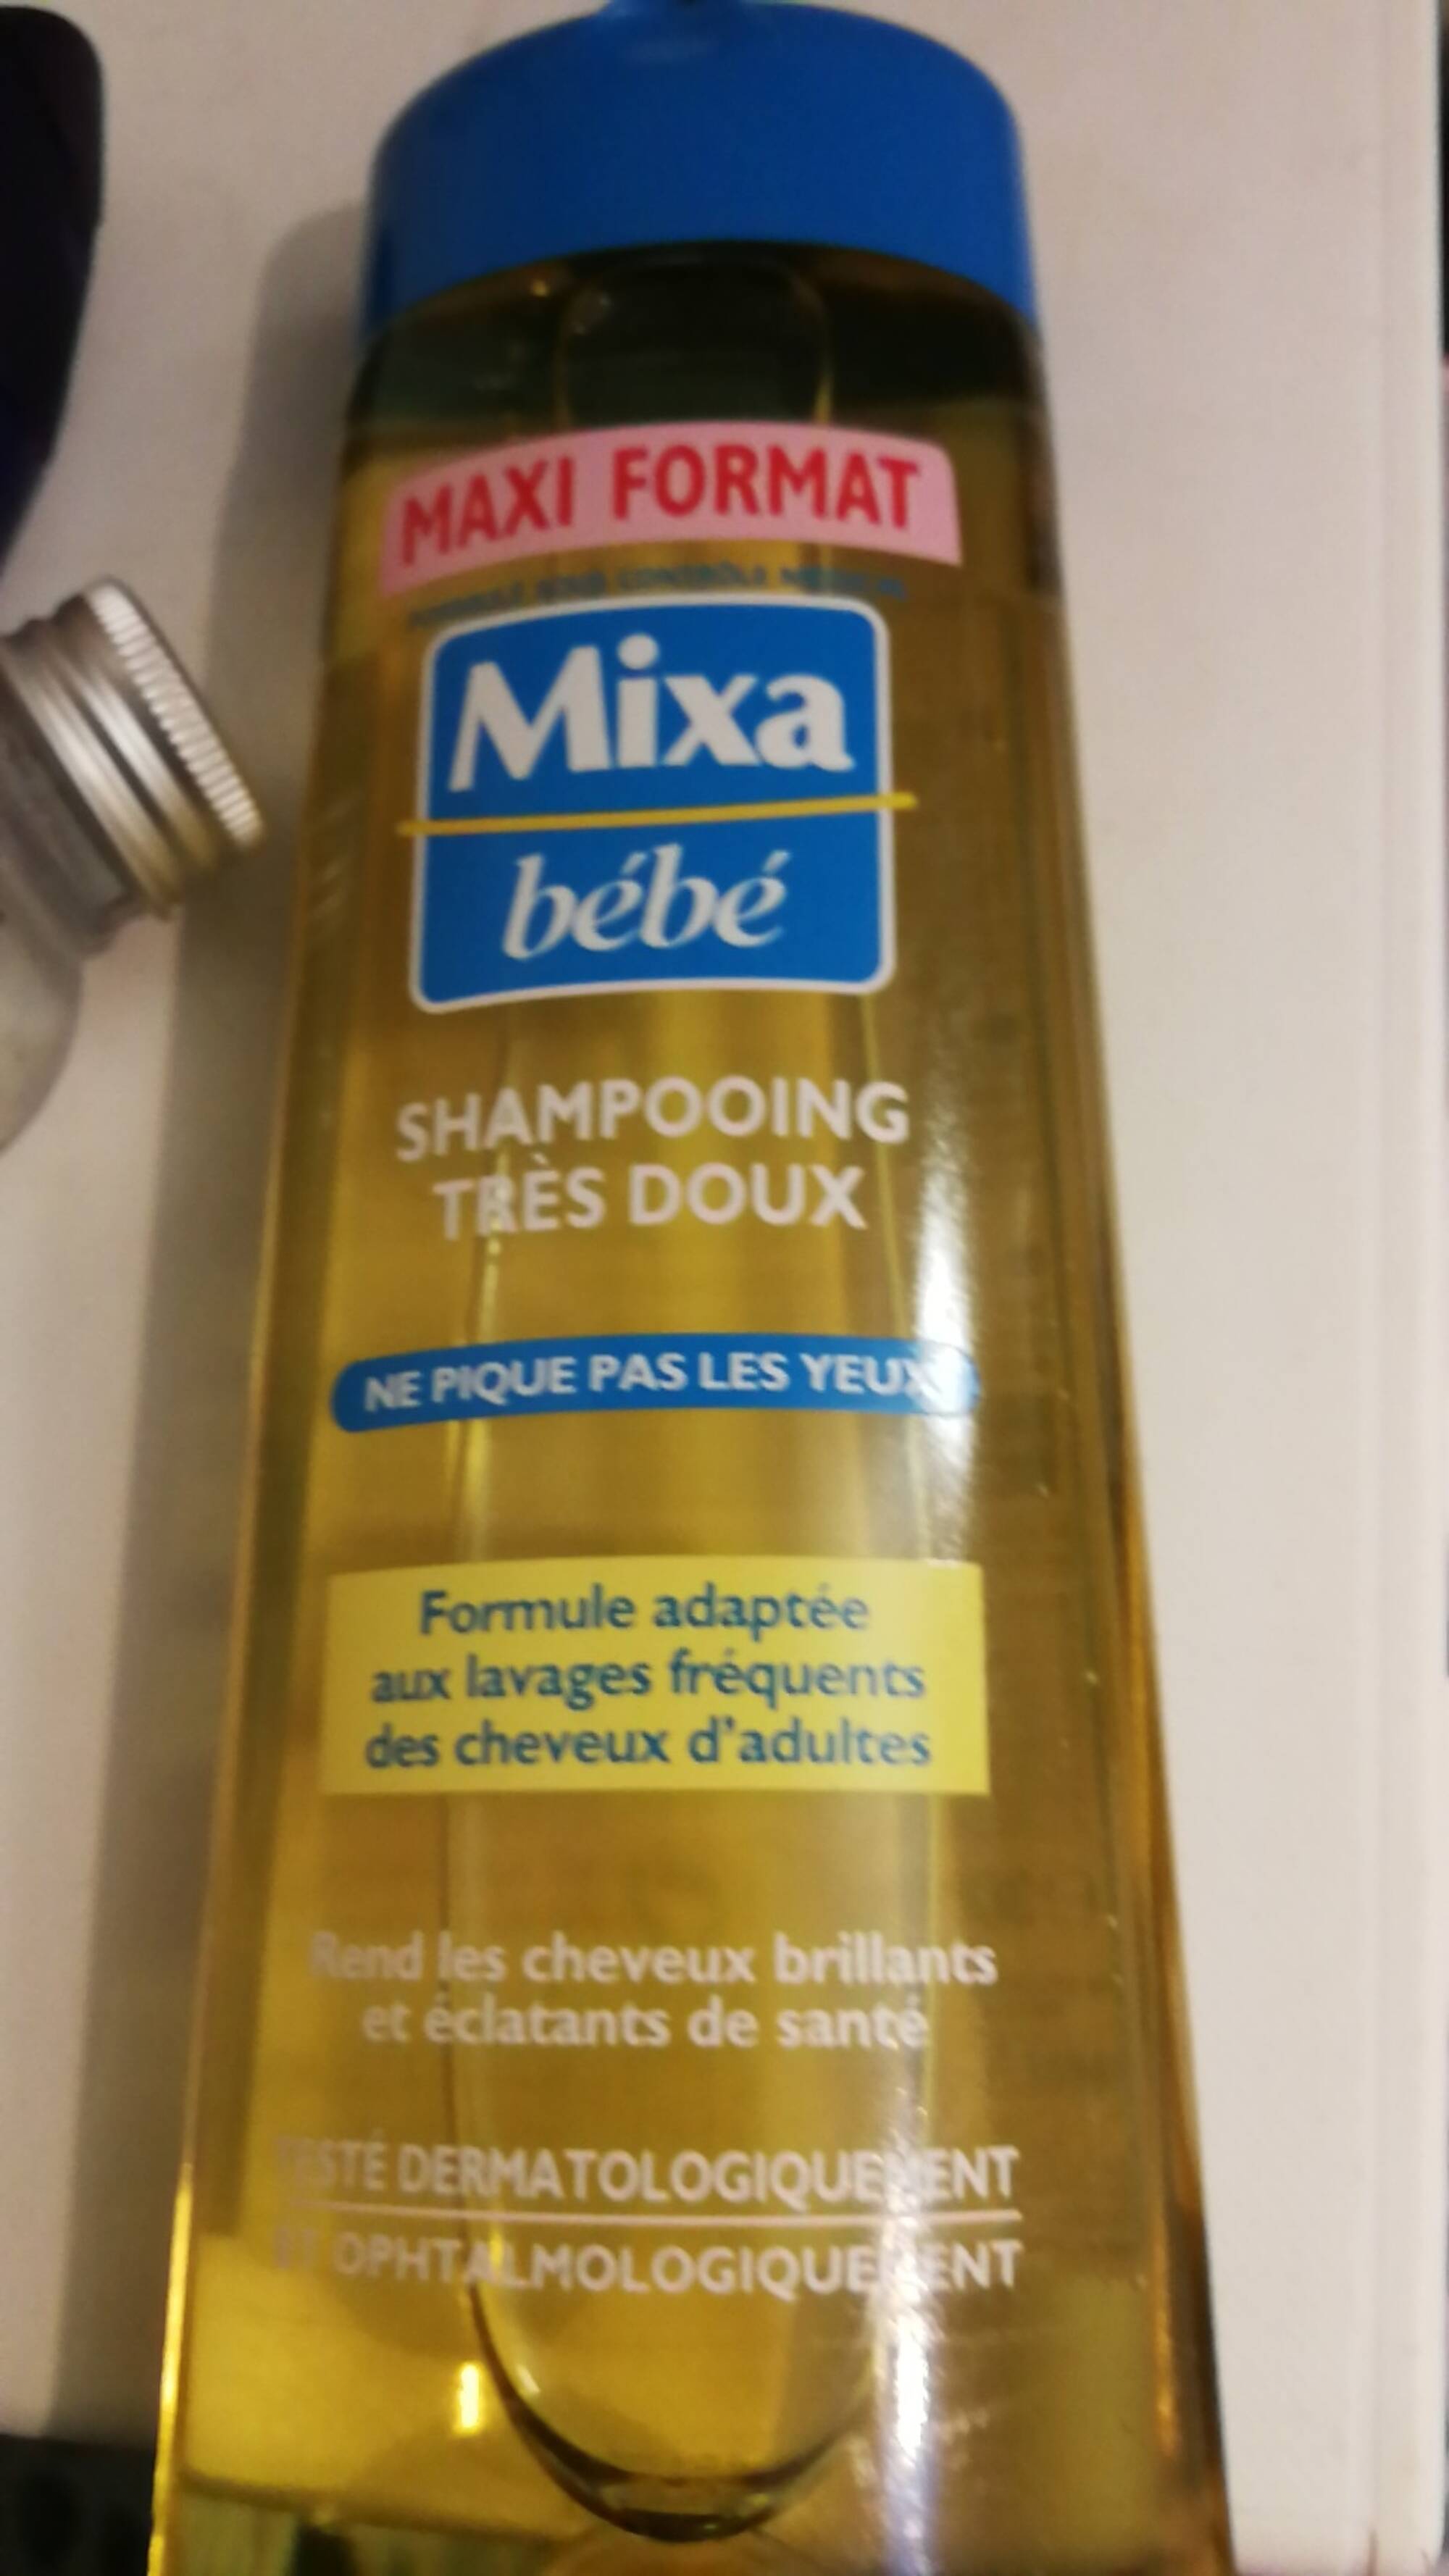 MIXA - Bébé - Shampooing très doux 